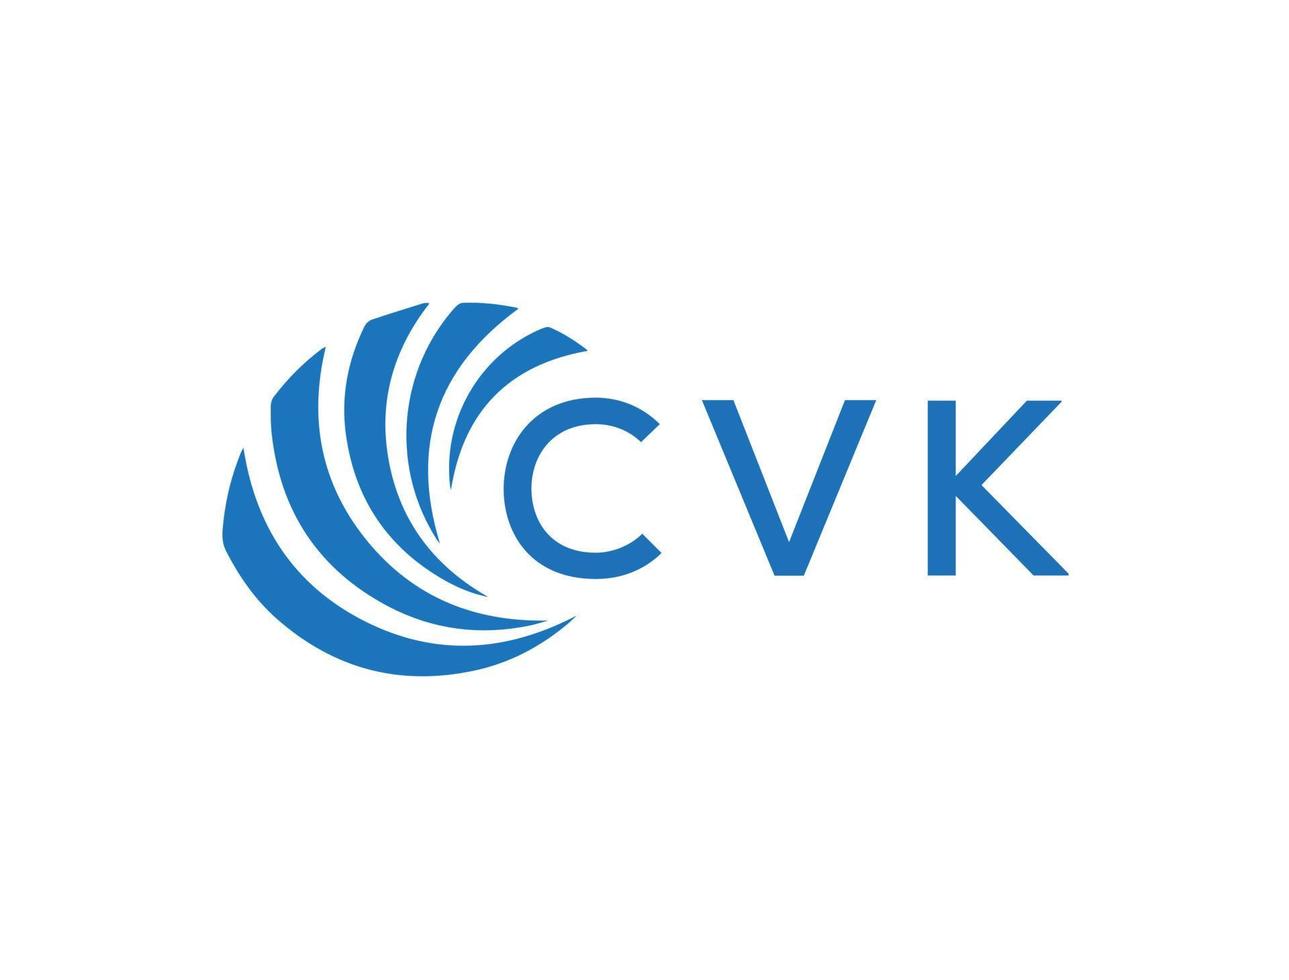 CVK letter logo design on white background. CVK creative circle letter logo concept. CVK letter design. vector